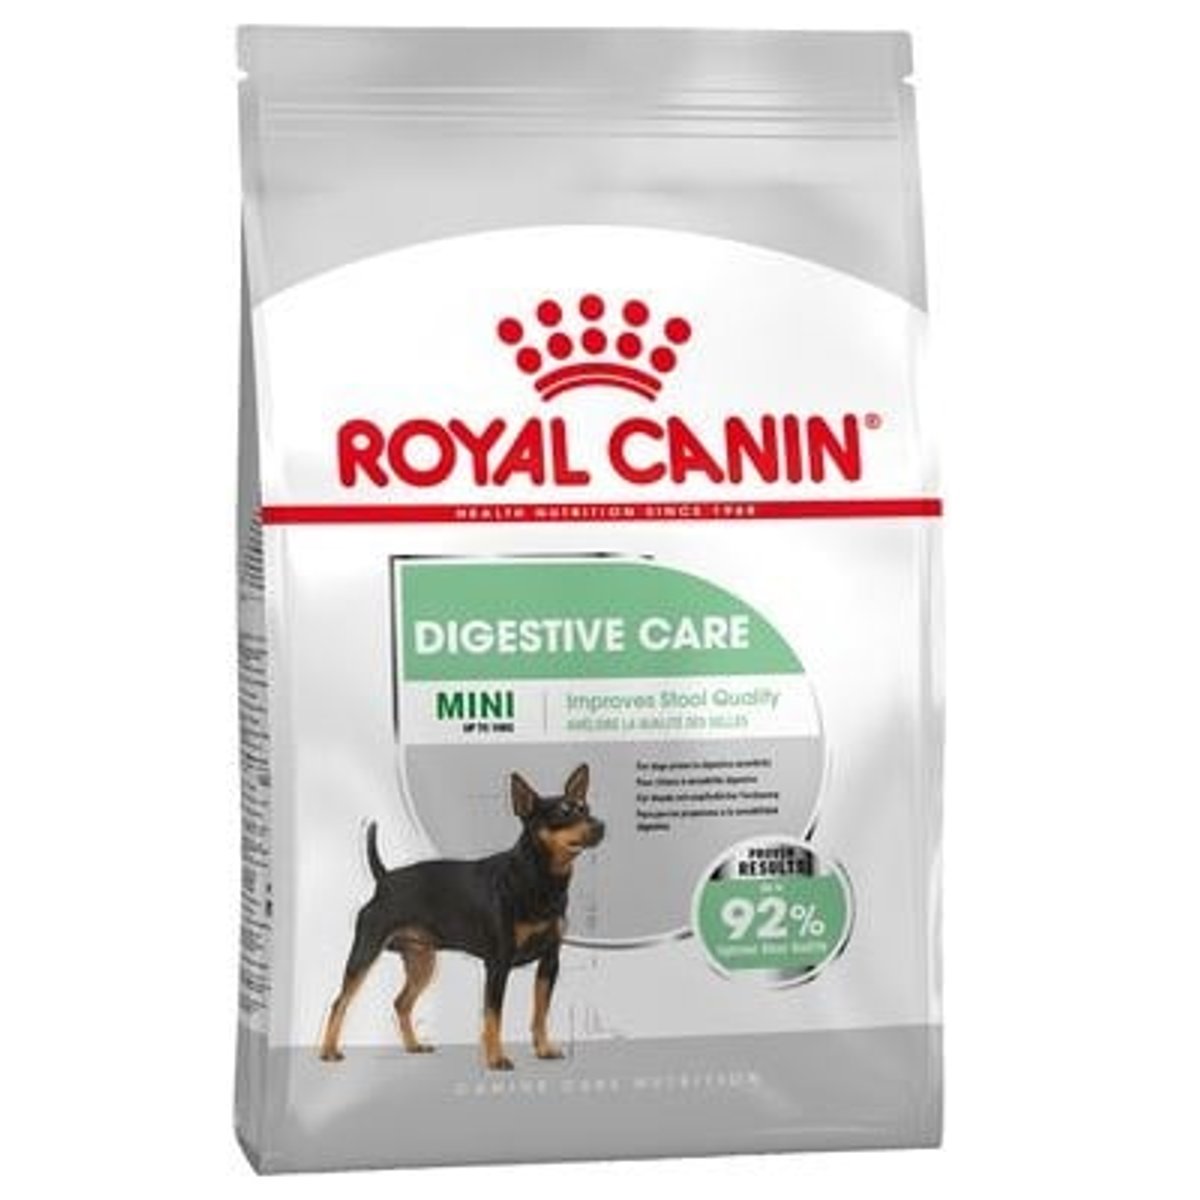 Royal Canin Digestive Care Mini granule pro psy malých plemen